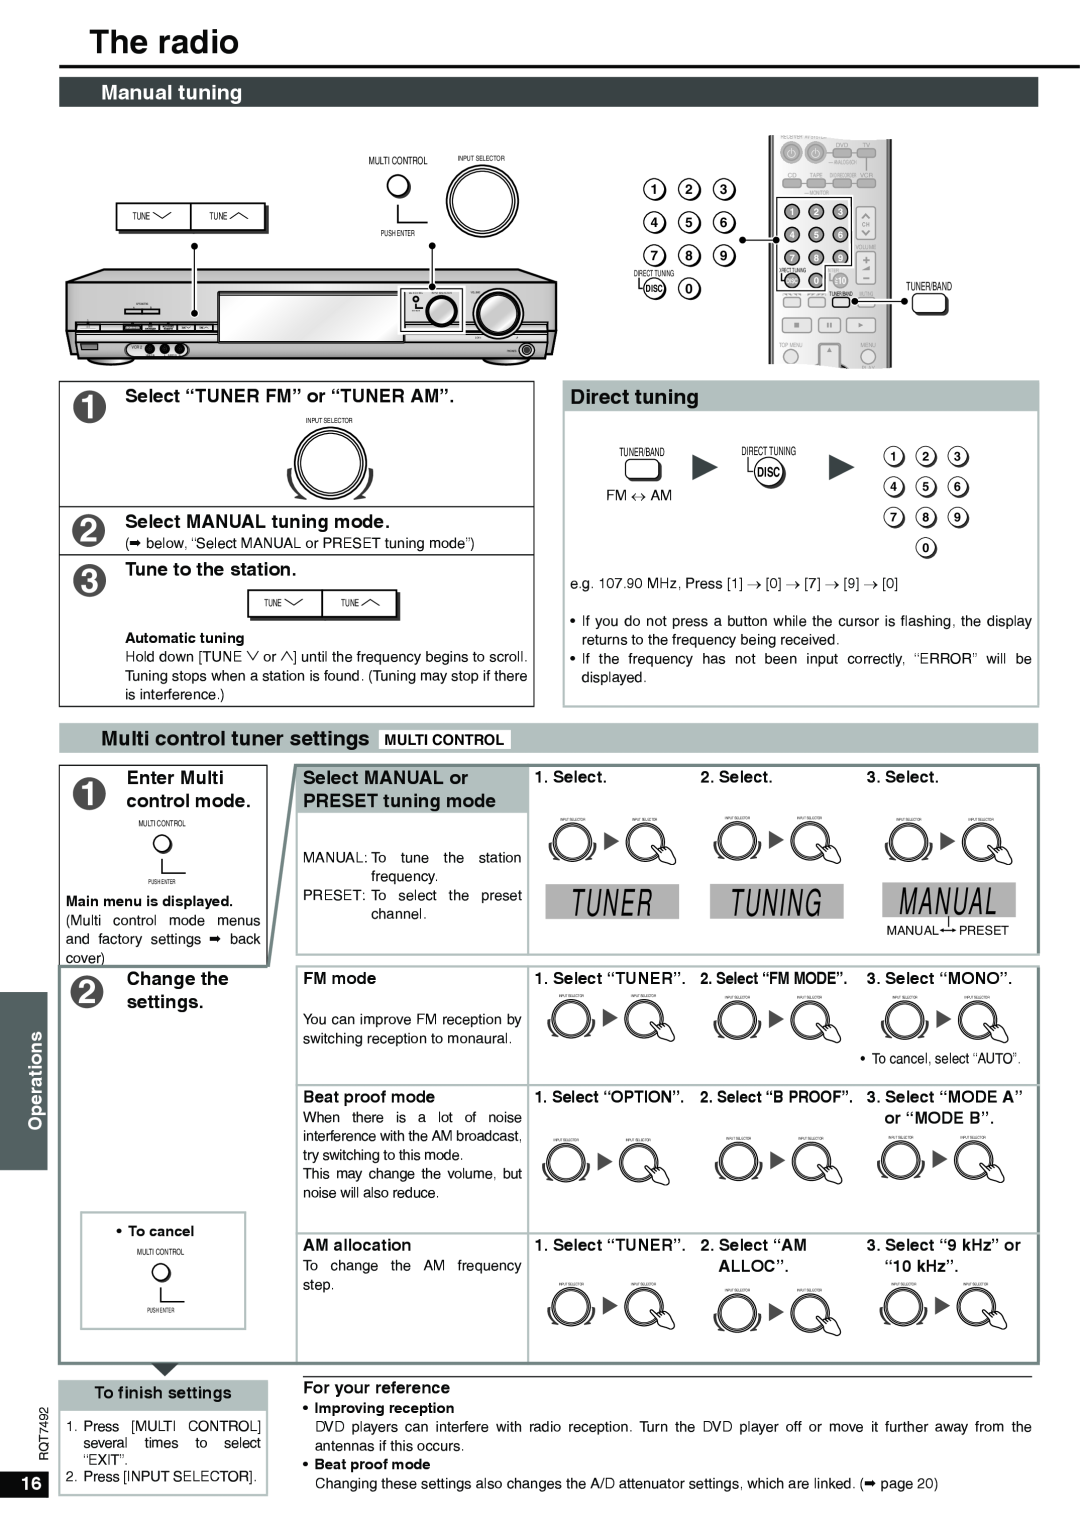 Panasonic SA-XR50 Tuner Tuning Manual, The radio, Manual tuning, Select “TUNER FM” or “TUNER AM”, Tune to the station 